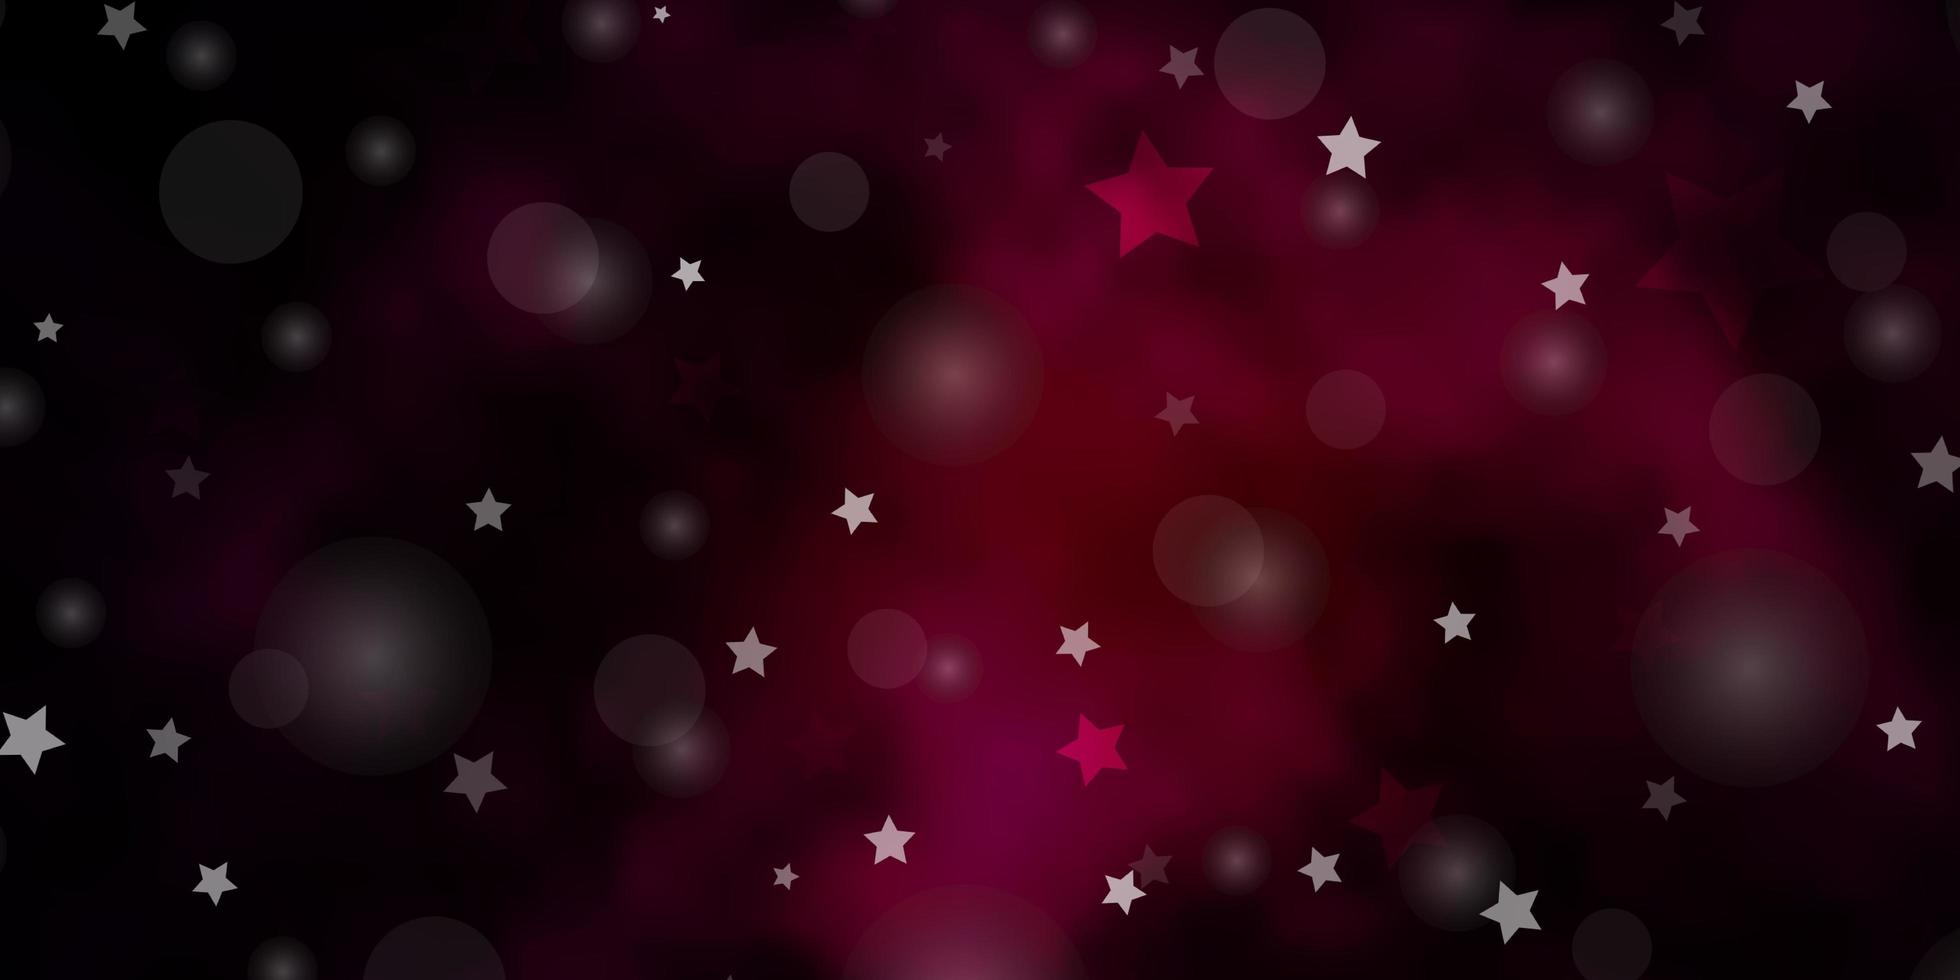 modelo de vetor rosa escuro com círculos, estrelas. desenho abstrato em estilo gradiente com bolhas, estrelas. modelo para cartões de visita, sites.